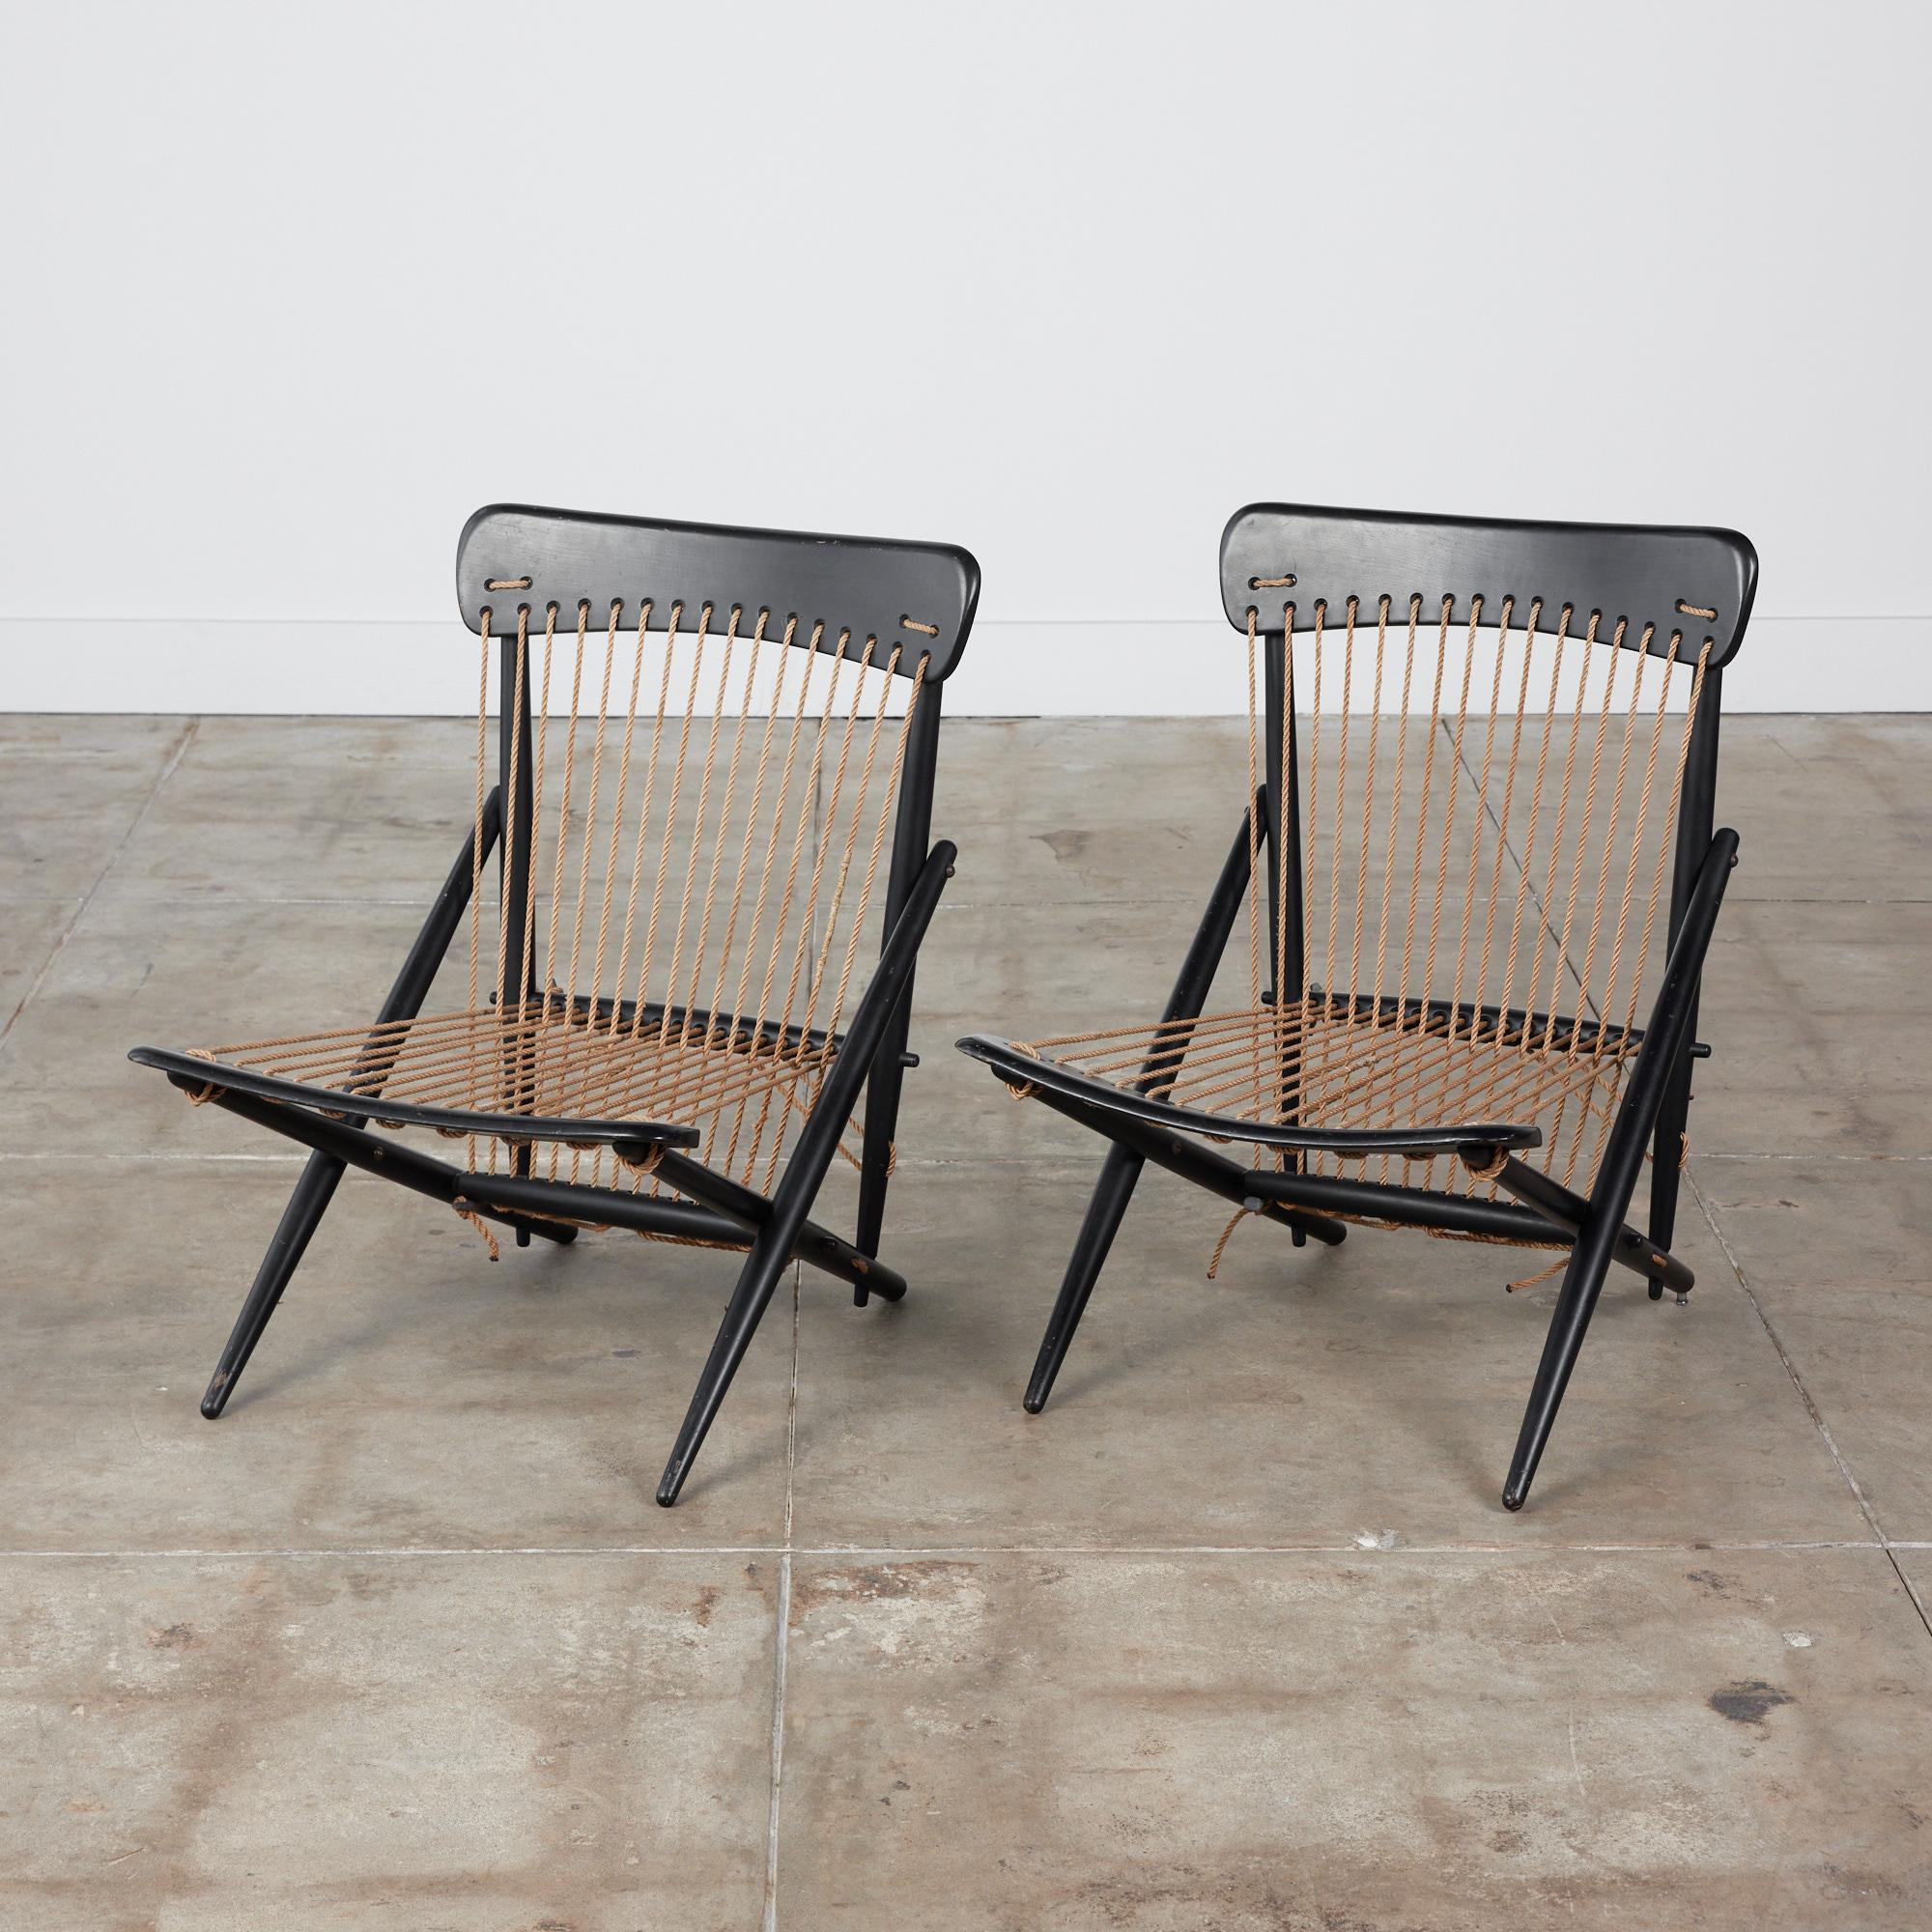 Paire de chaises longues en corde Maruni, C.I.C., Japon. Les chaises présentent une structure en bois de hêtre ébonisé et sont contrastées par leur assise et leur dossier en cordes tendues de couleur camel. Ces chaises minimalistes ont l'aspect d'un